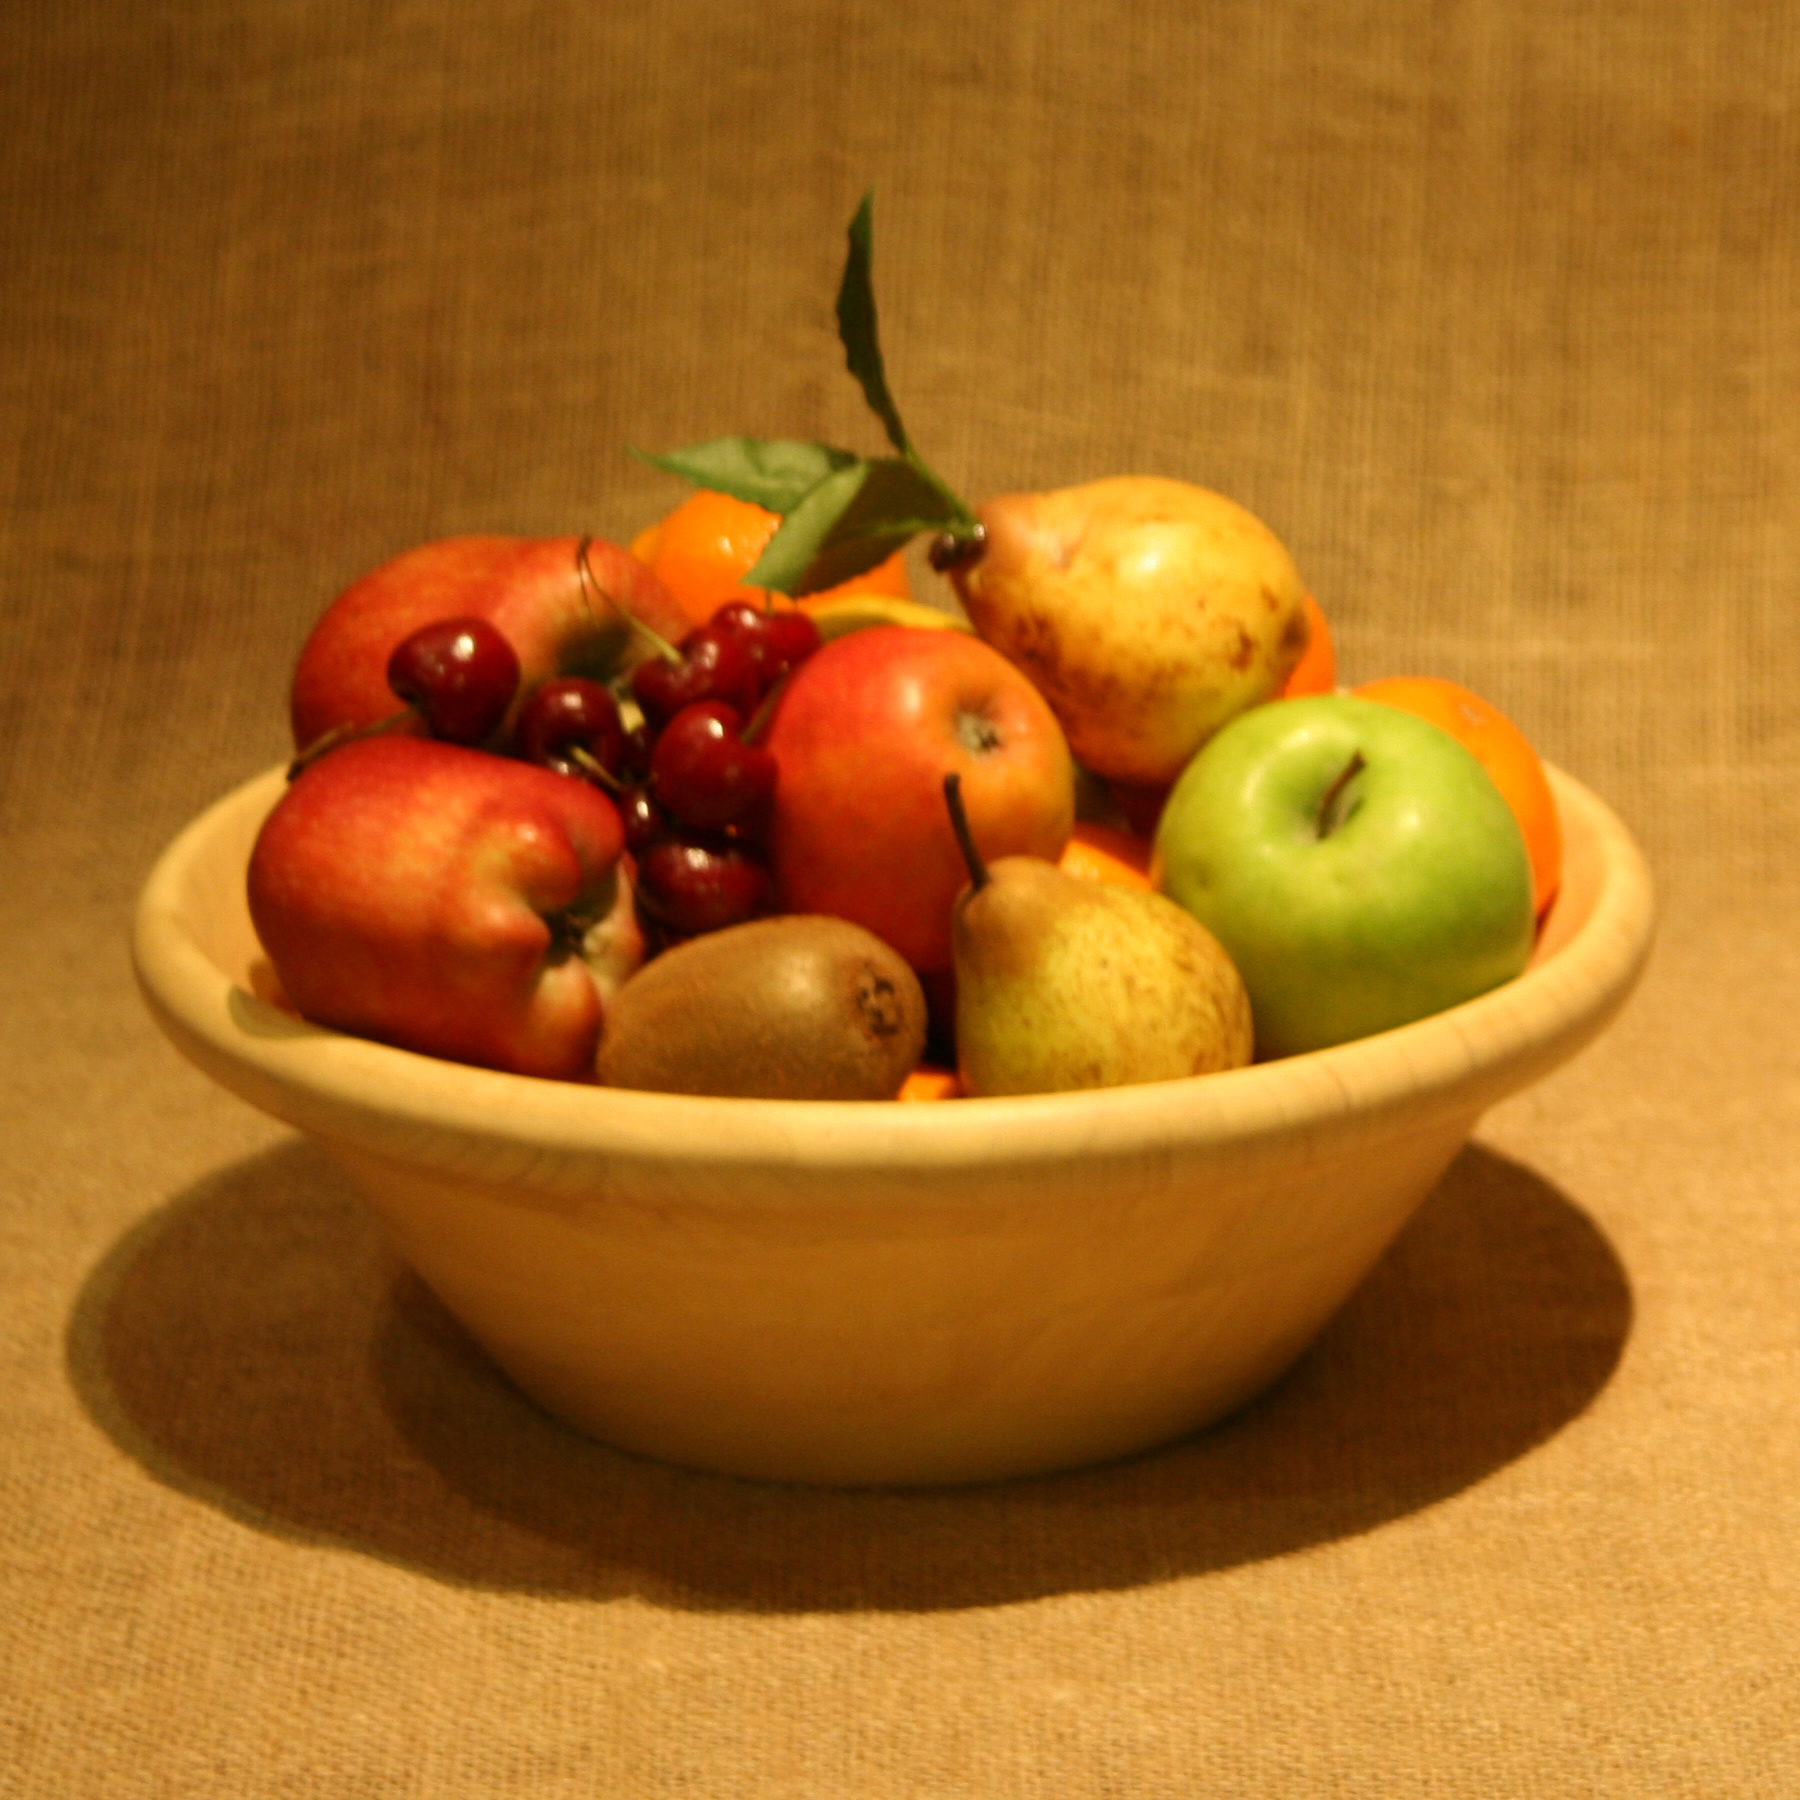 Large wooden bowls make fantastic fruit bowls